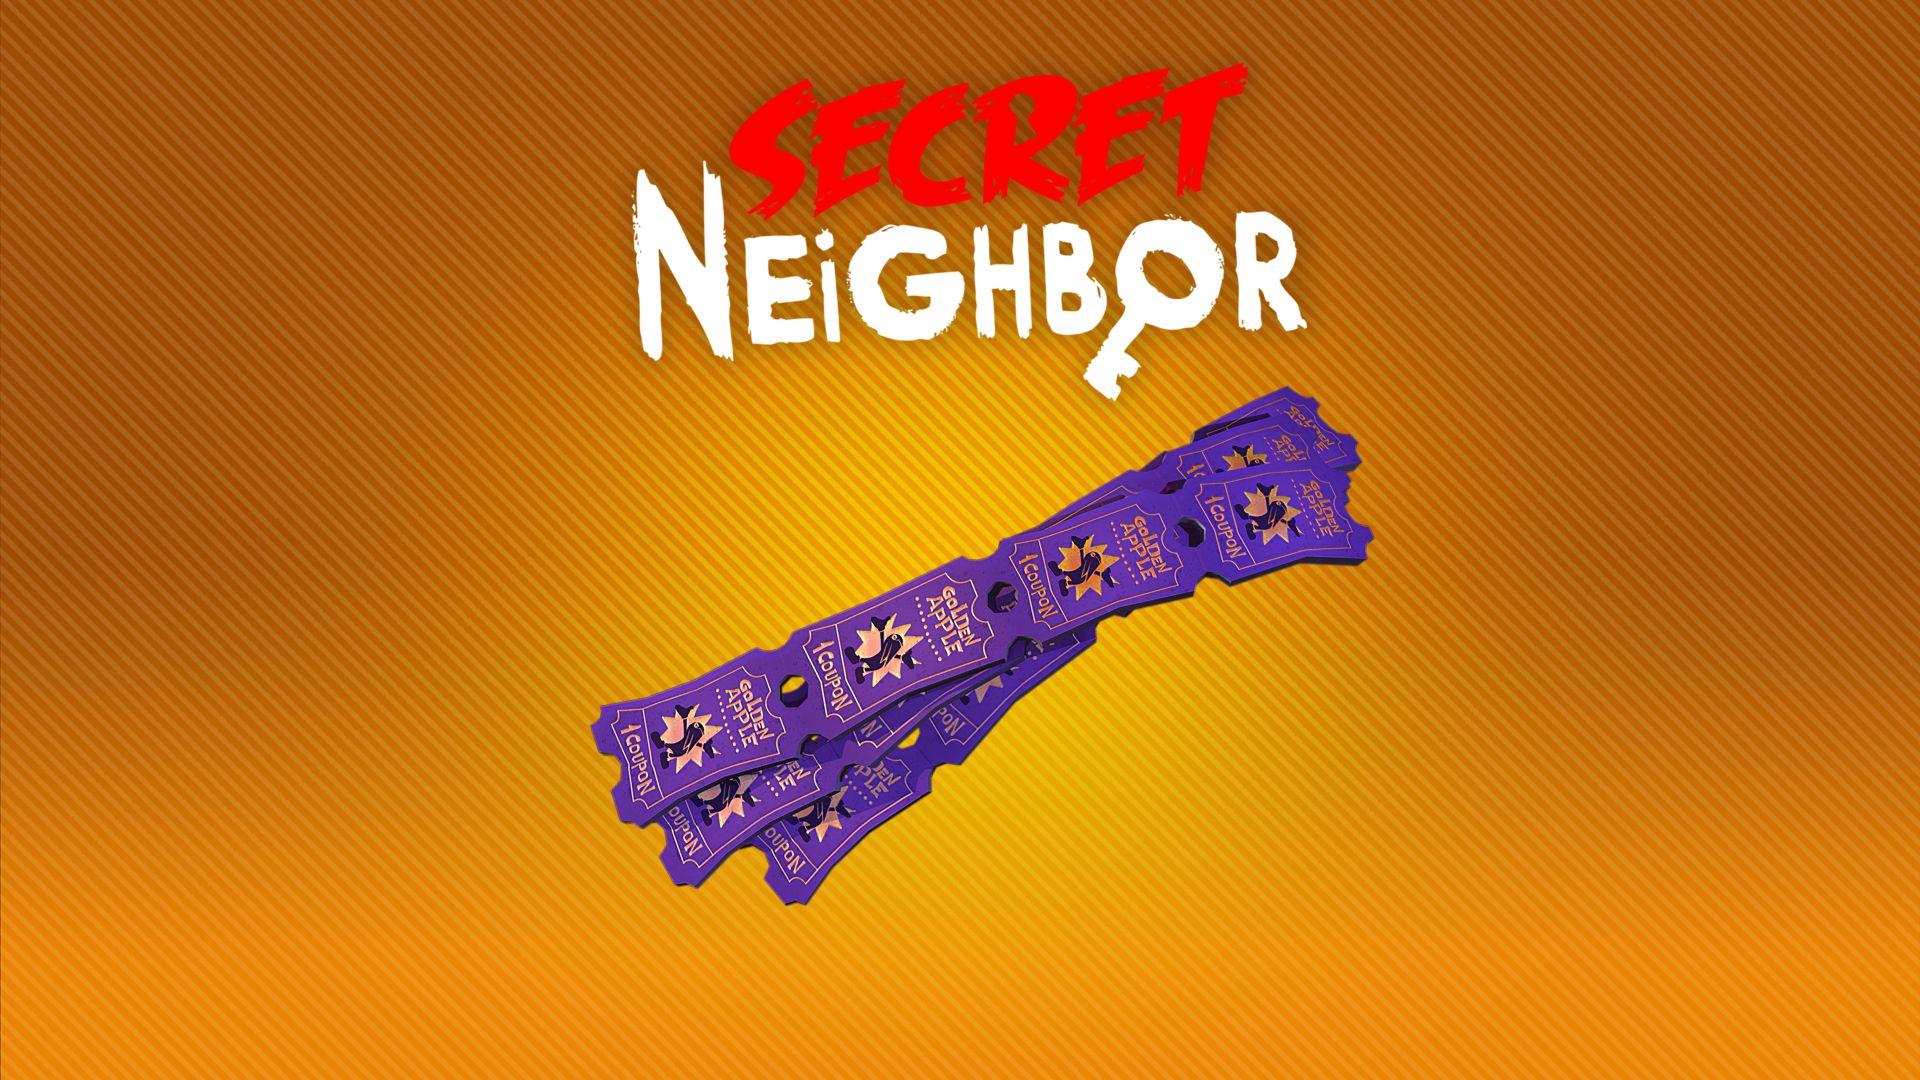 secret neighbor switch review